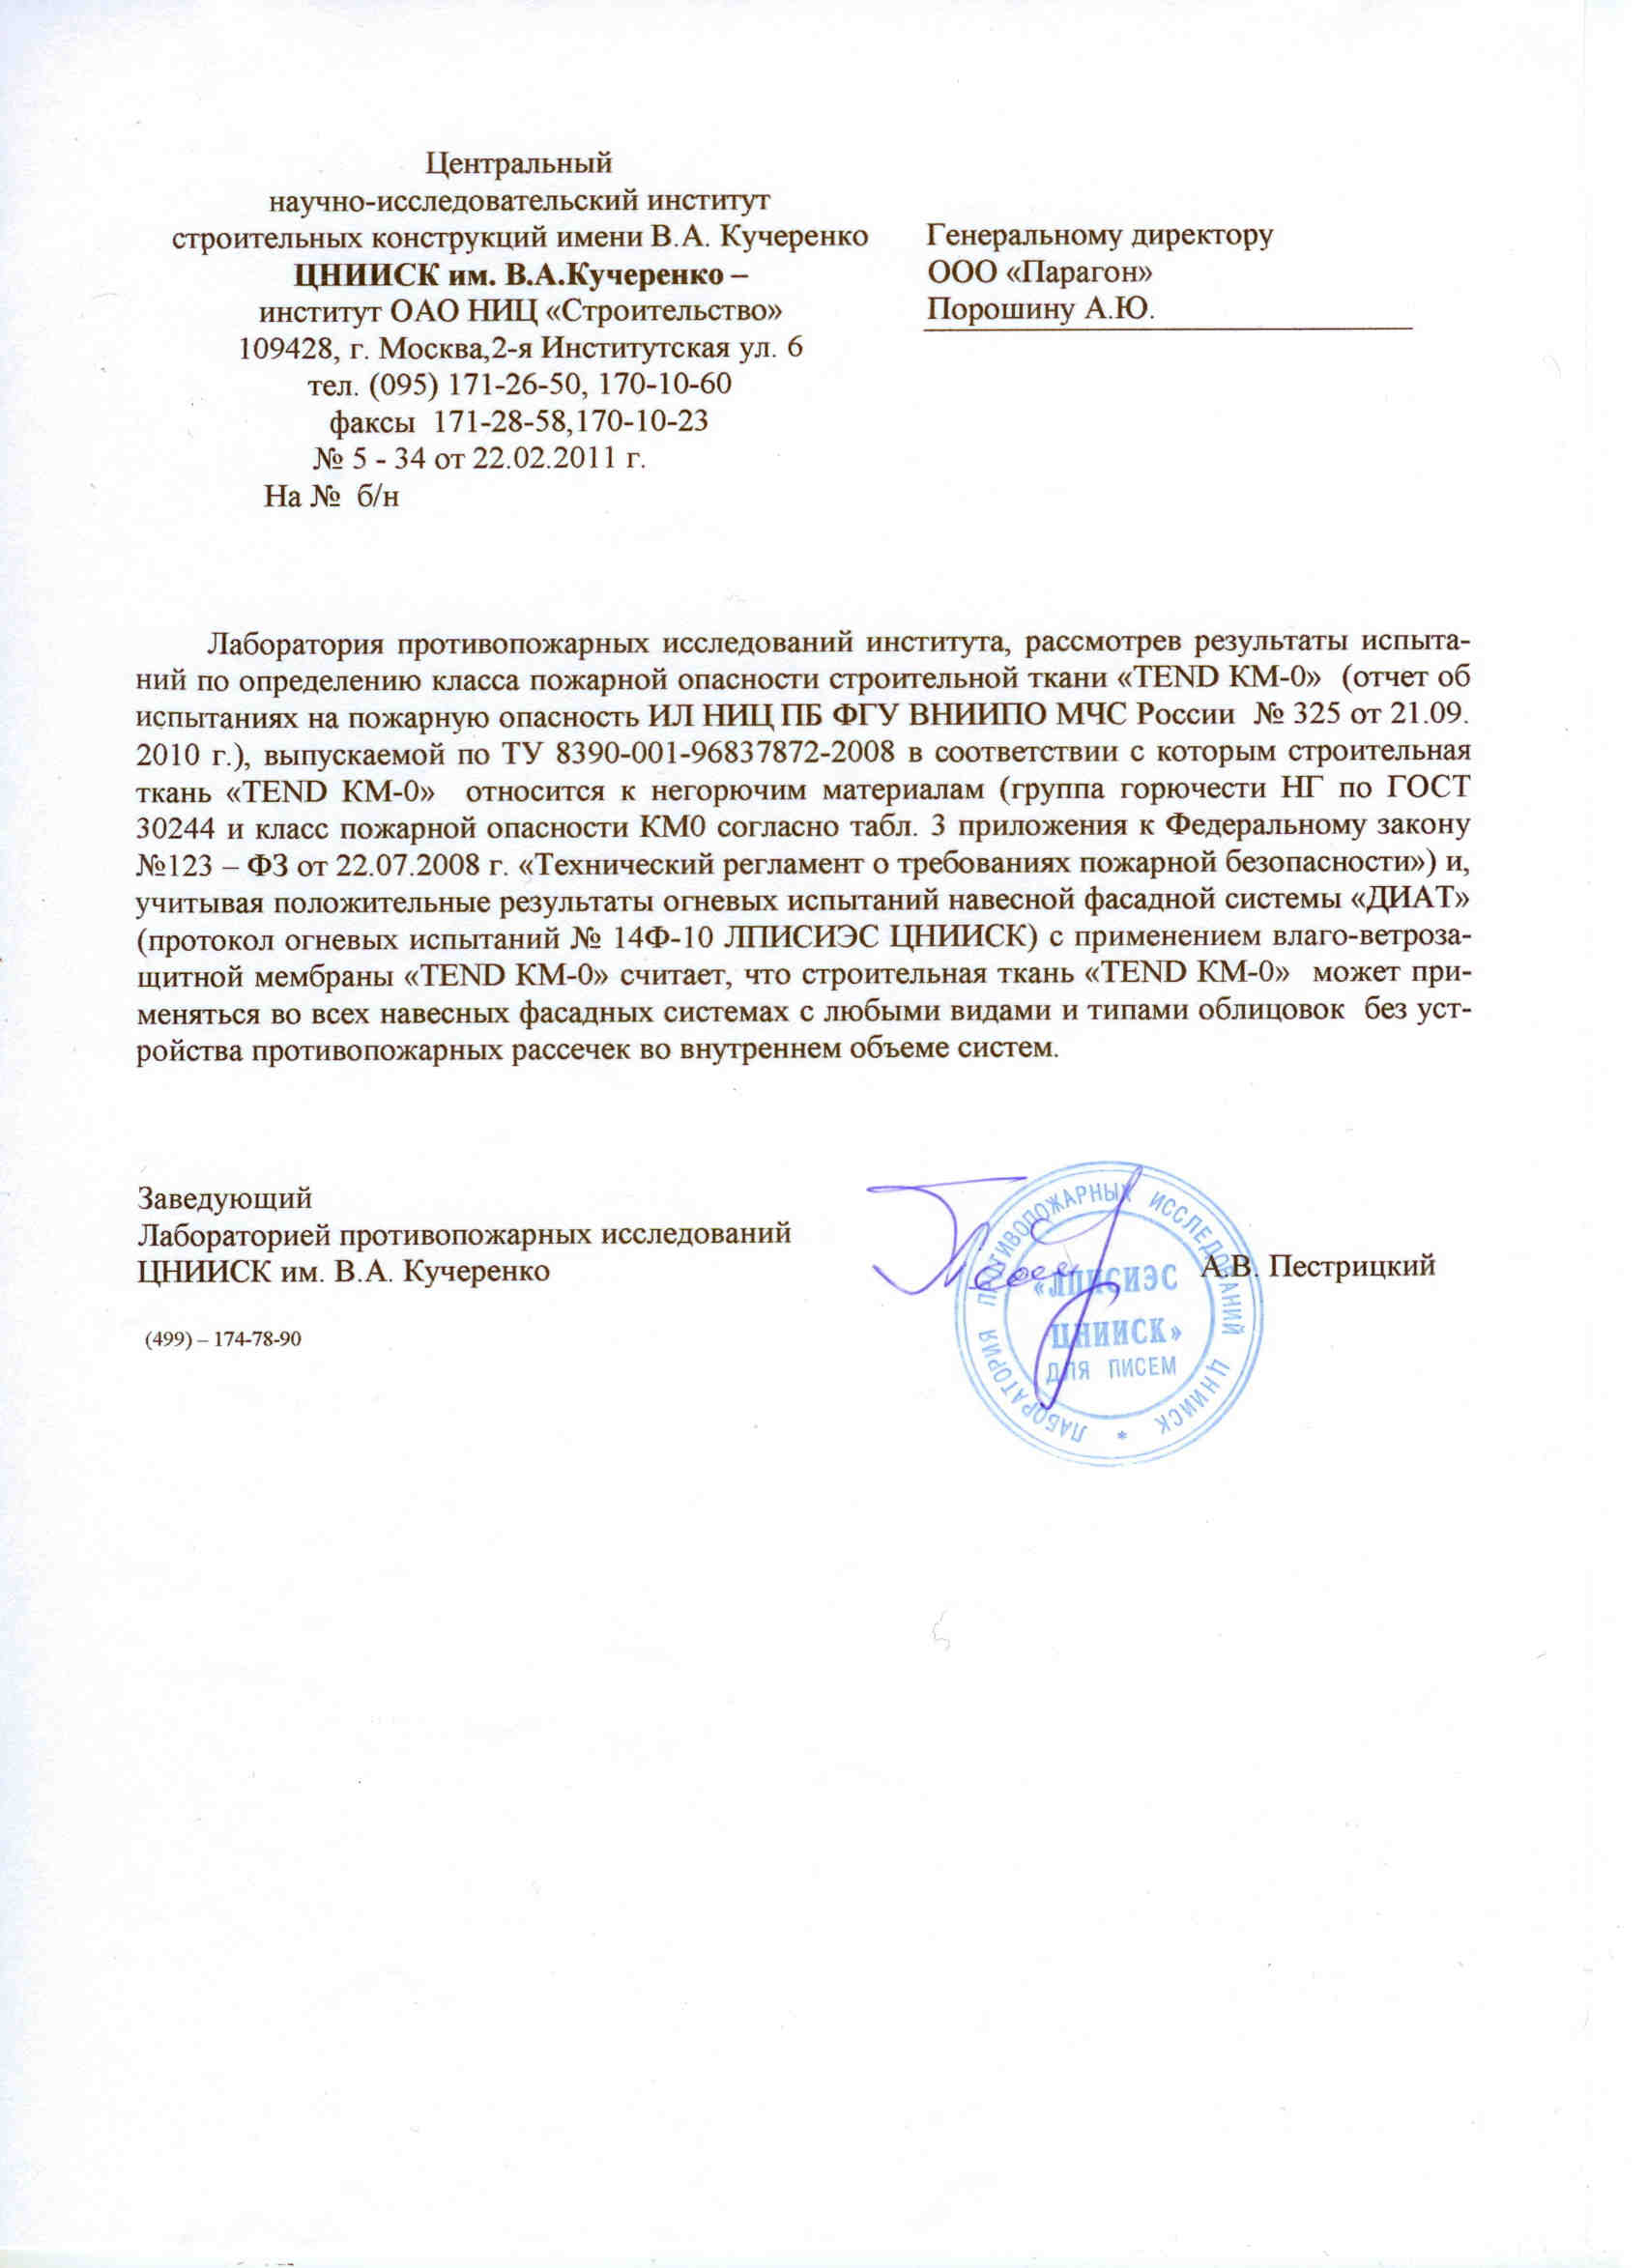 Письмо из Центрального научно-исследовательского института им. Кучеренко -1 